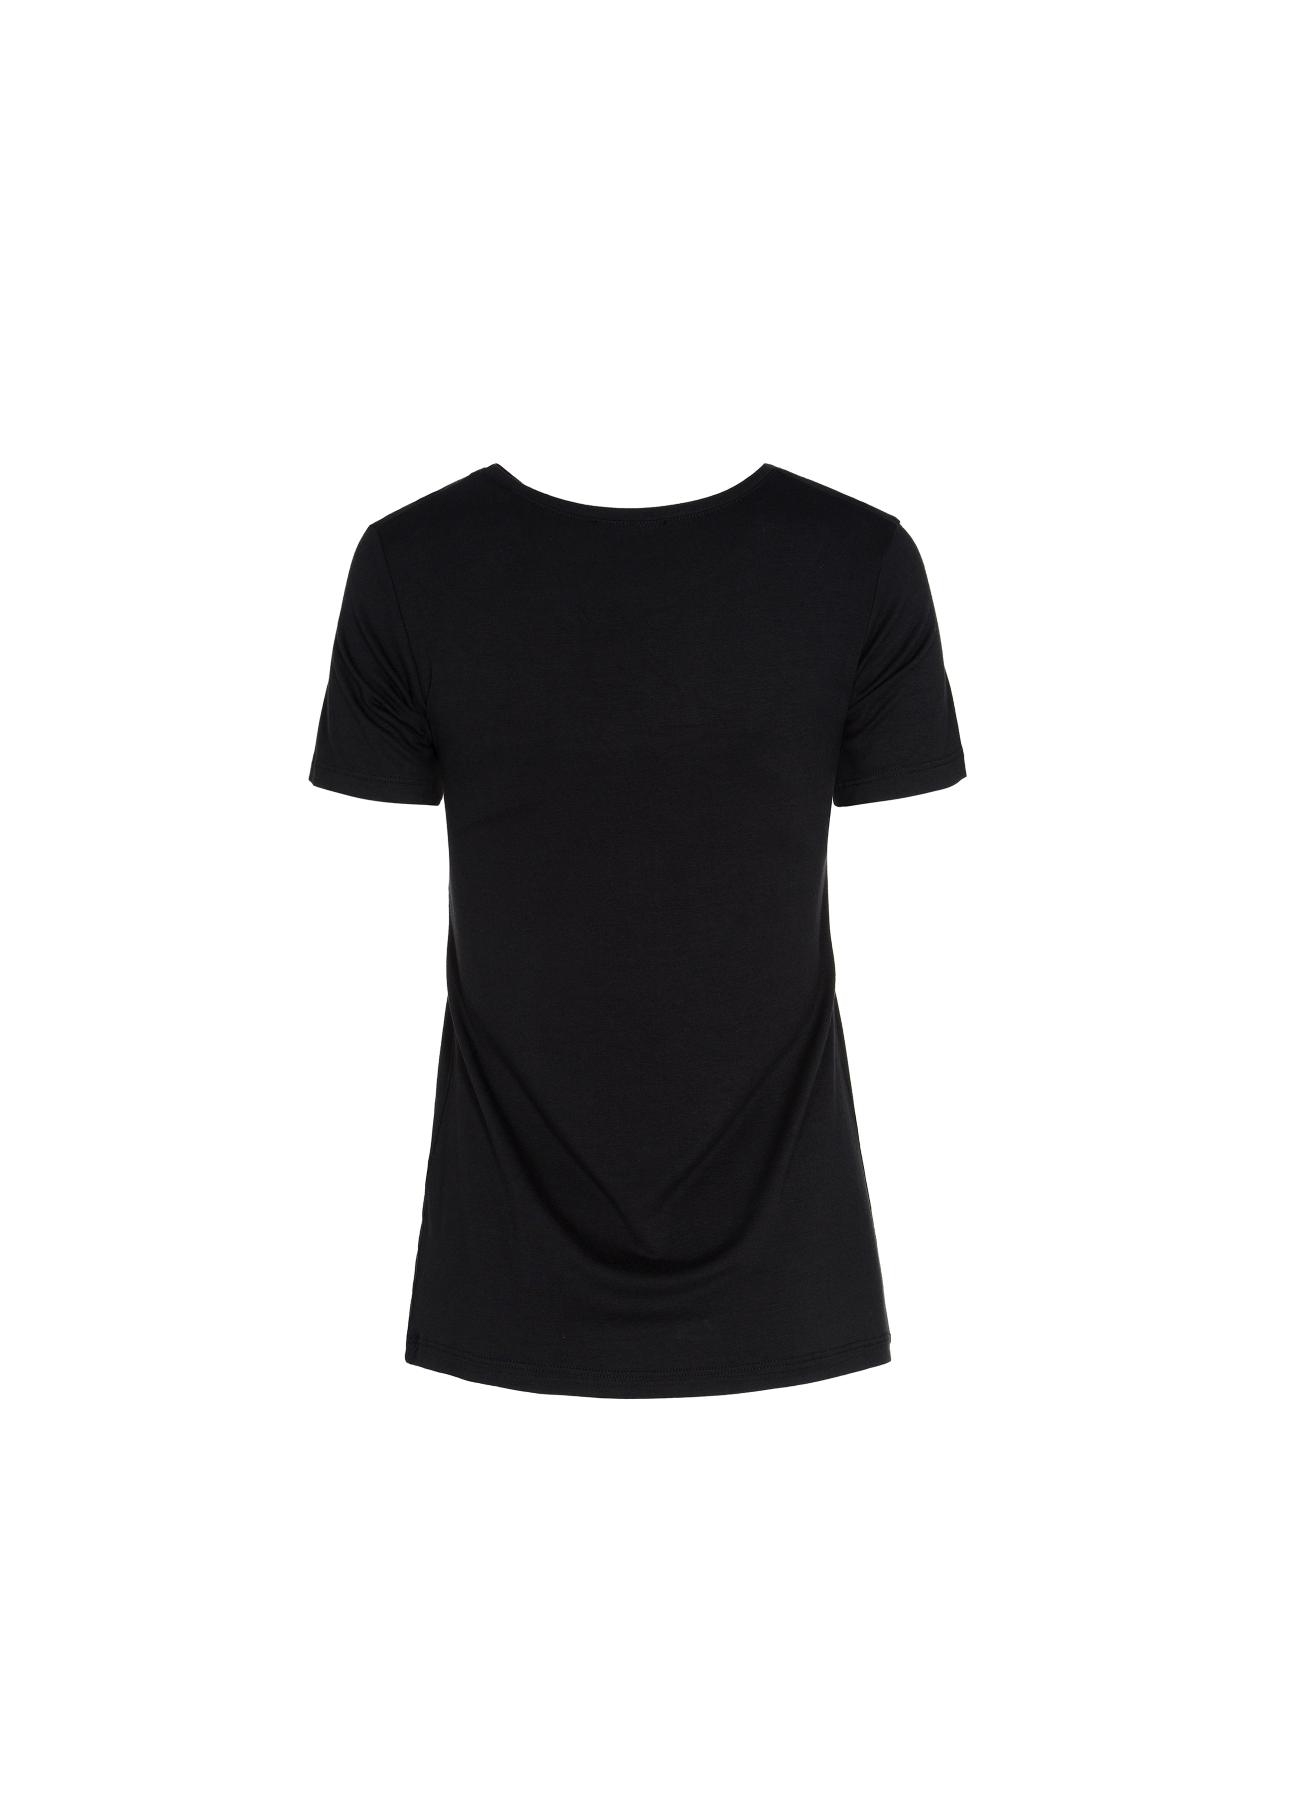 Czarny T-shirt damski z aplikacją TSHDT-0039-99(W19)